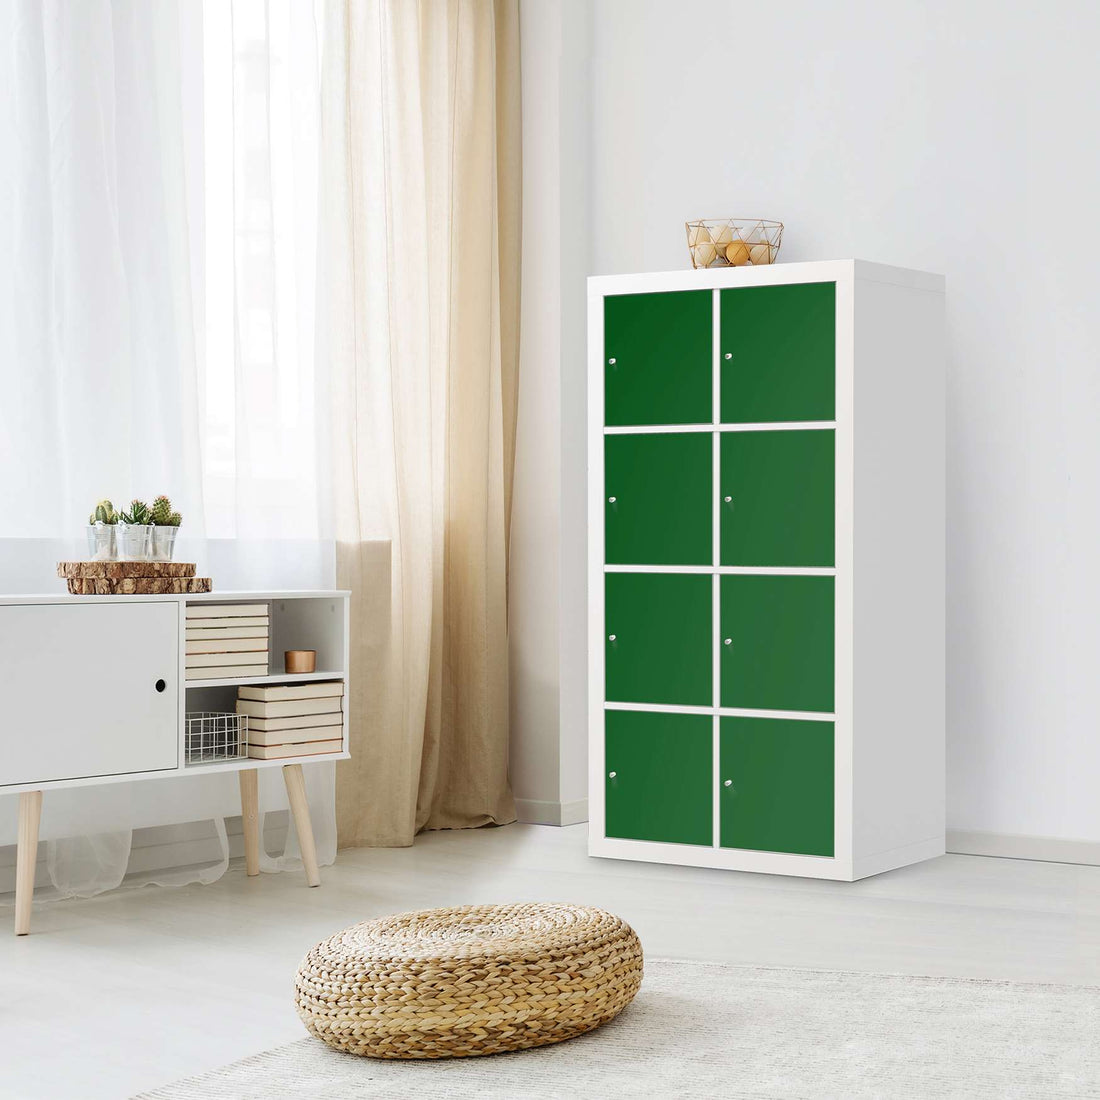 Klebefolie Grün Dark - IKEA Expedit Regal 8 Türen - Wohnzimmer